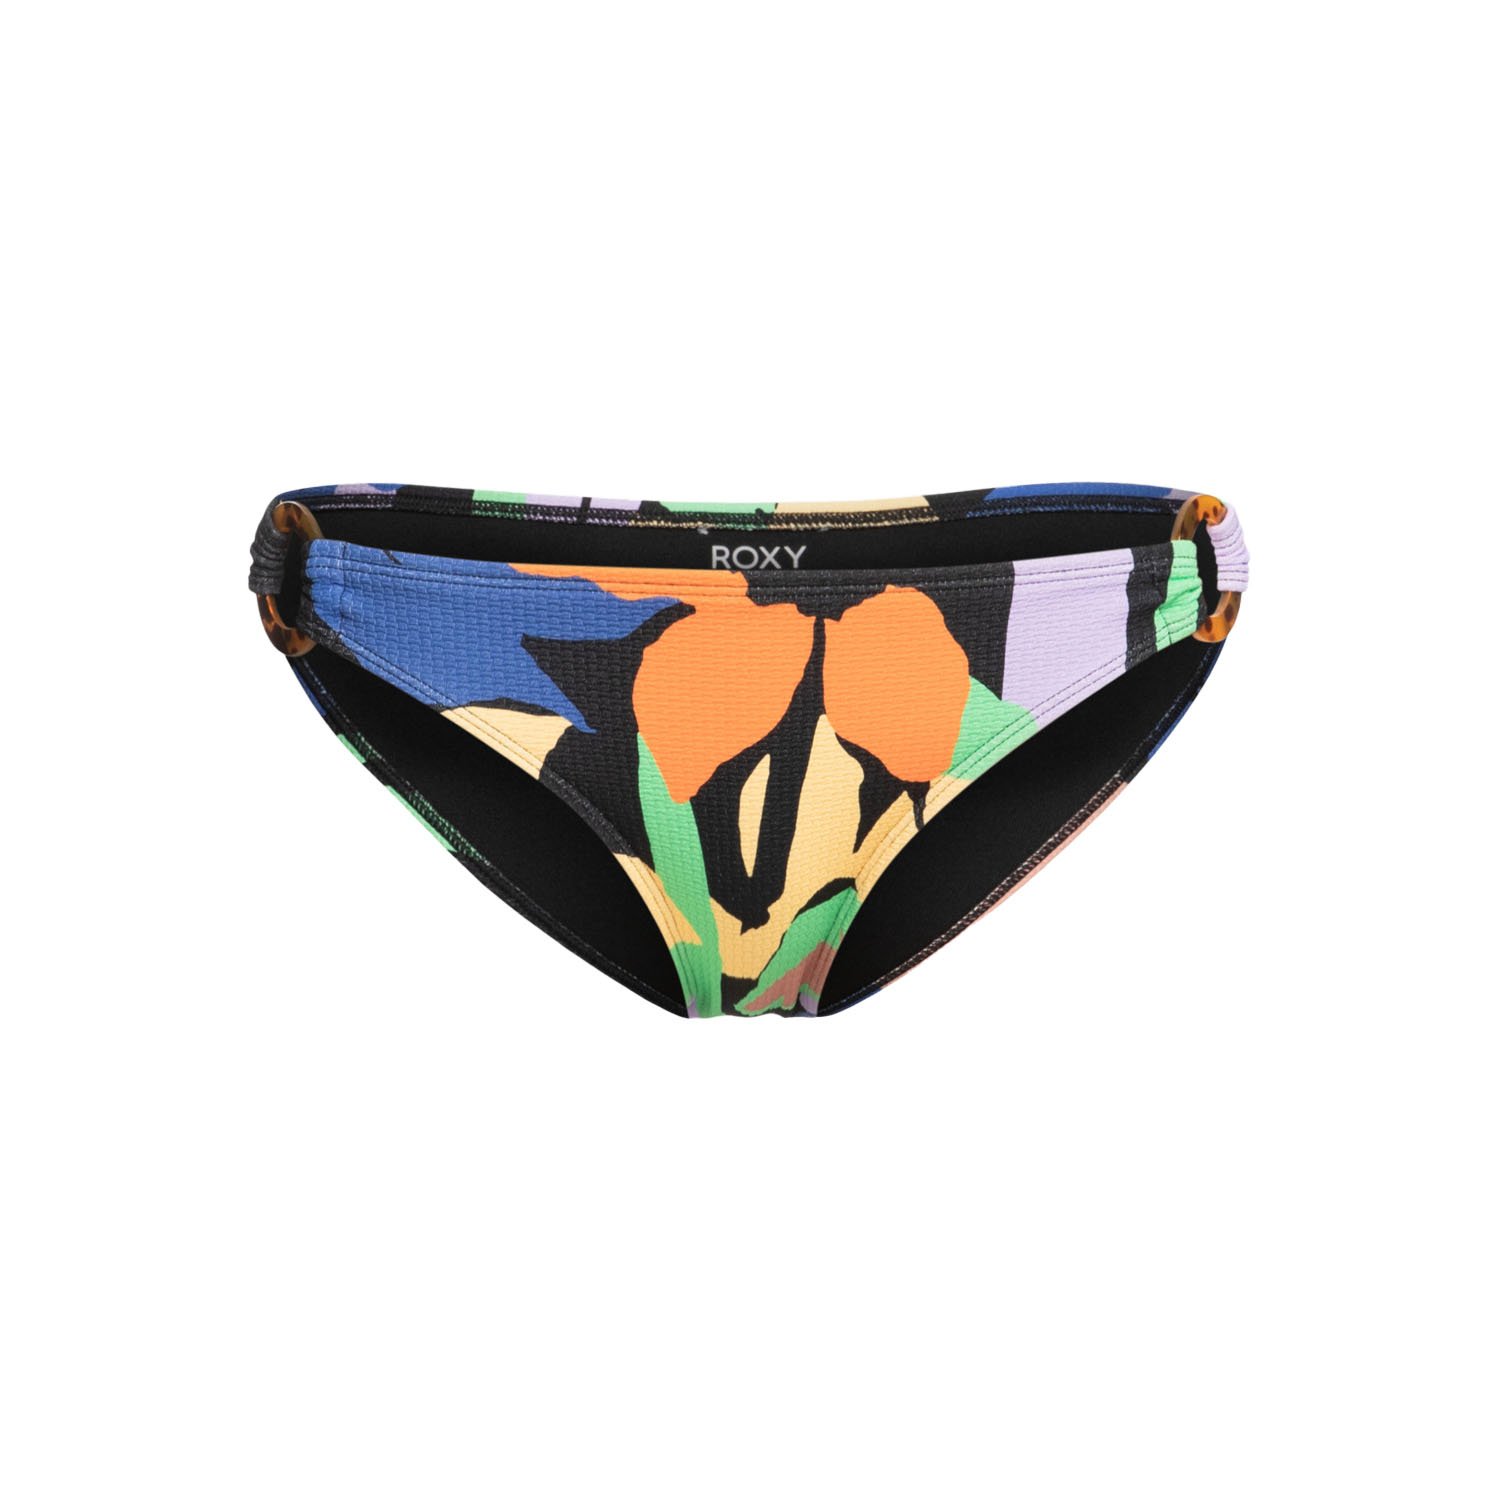 Roxy Color Jam Kadın Bikini Altı - Renkli - 1